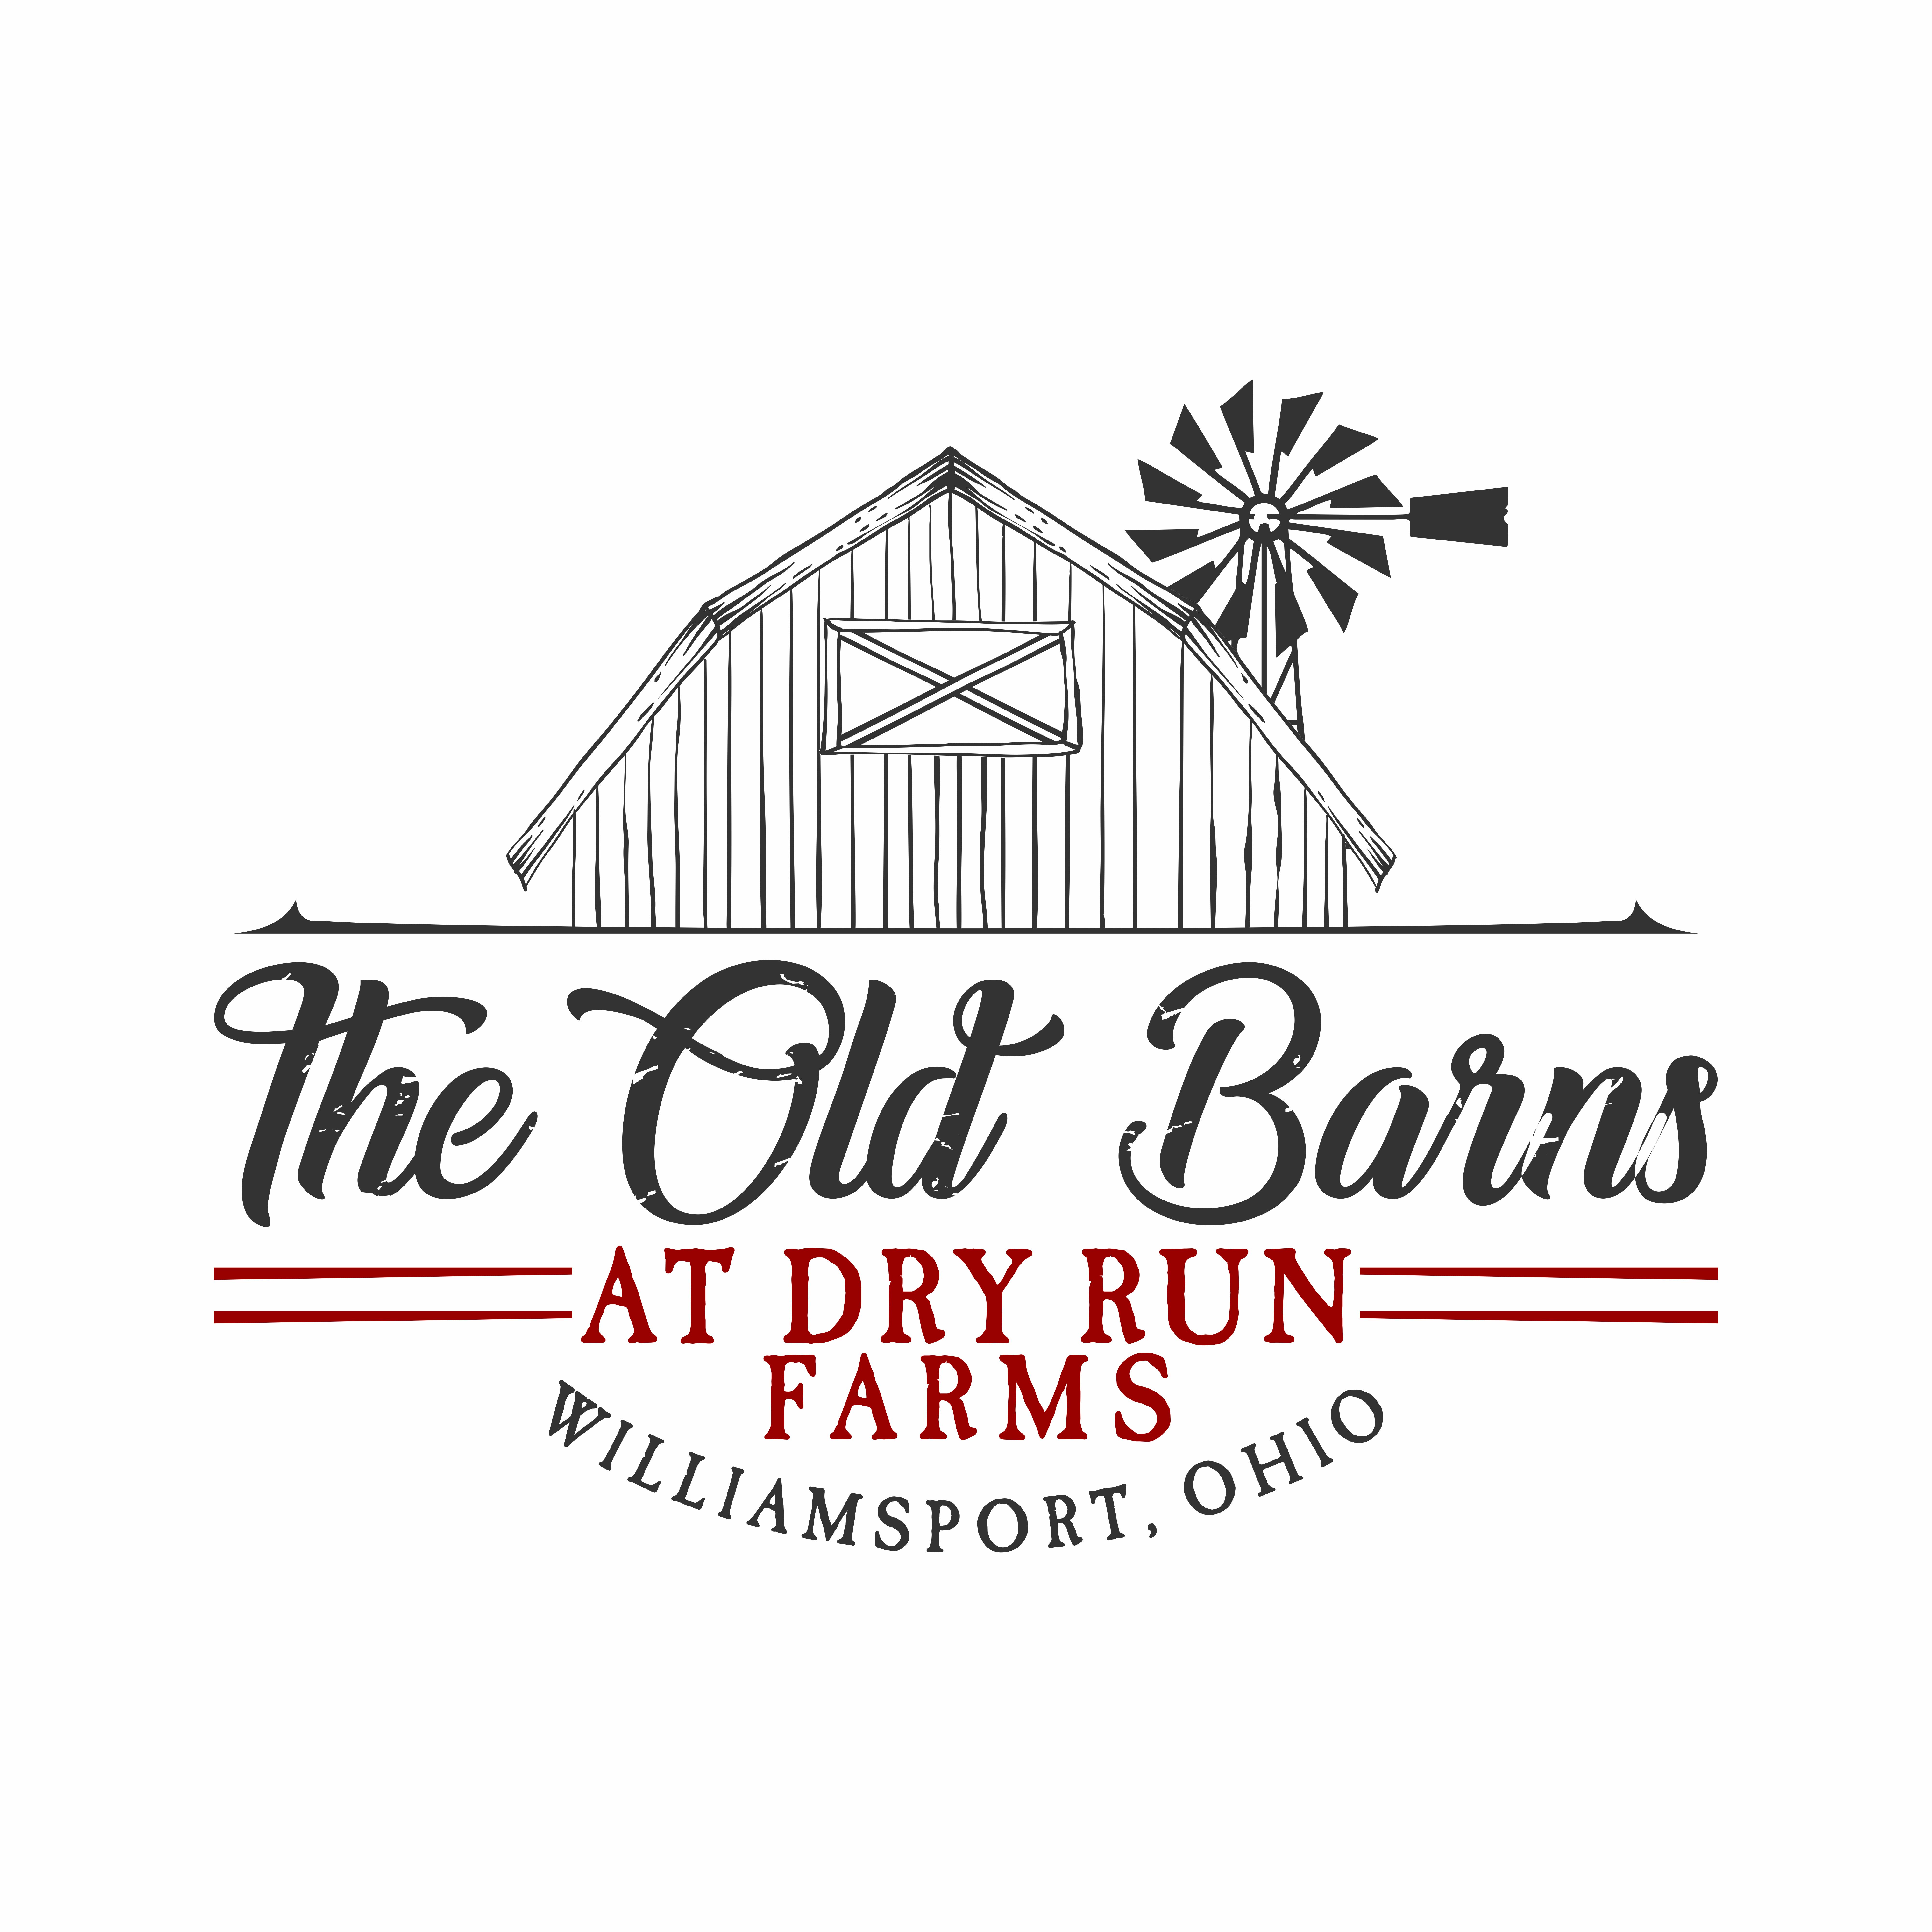 The Old Barns at Dry Run Farms